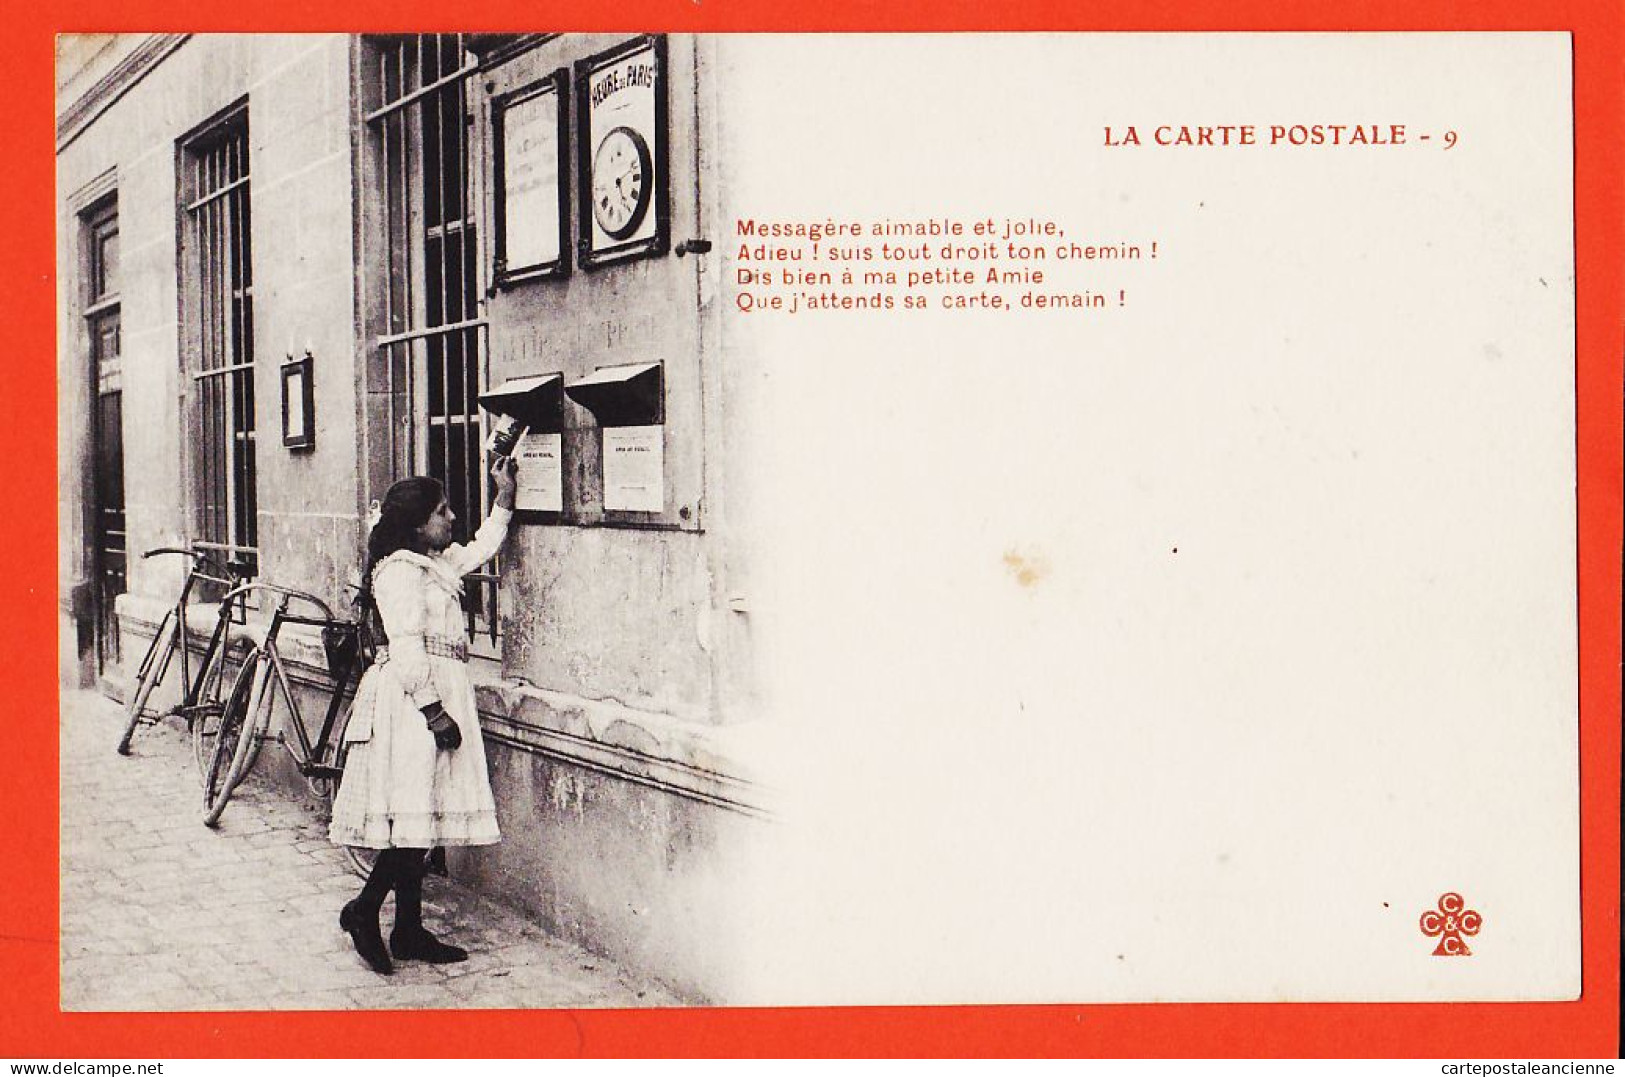 06289 / ♥️ ⭐ ◉  Métier Photographe Editeur LA CARTE POSTALE (9) Messagère Aimable Jolie Boîte Lettres 1900s TREFLE CCCC - Craft